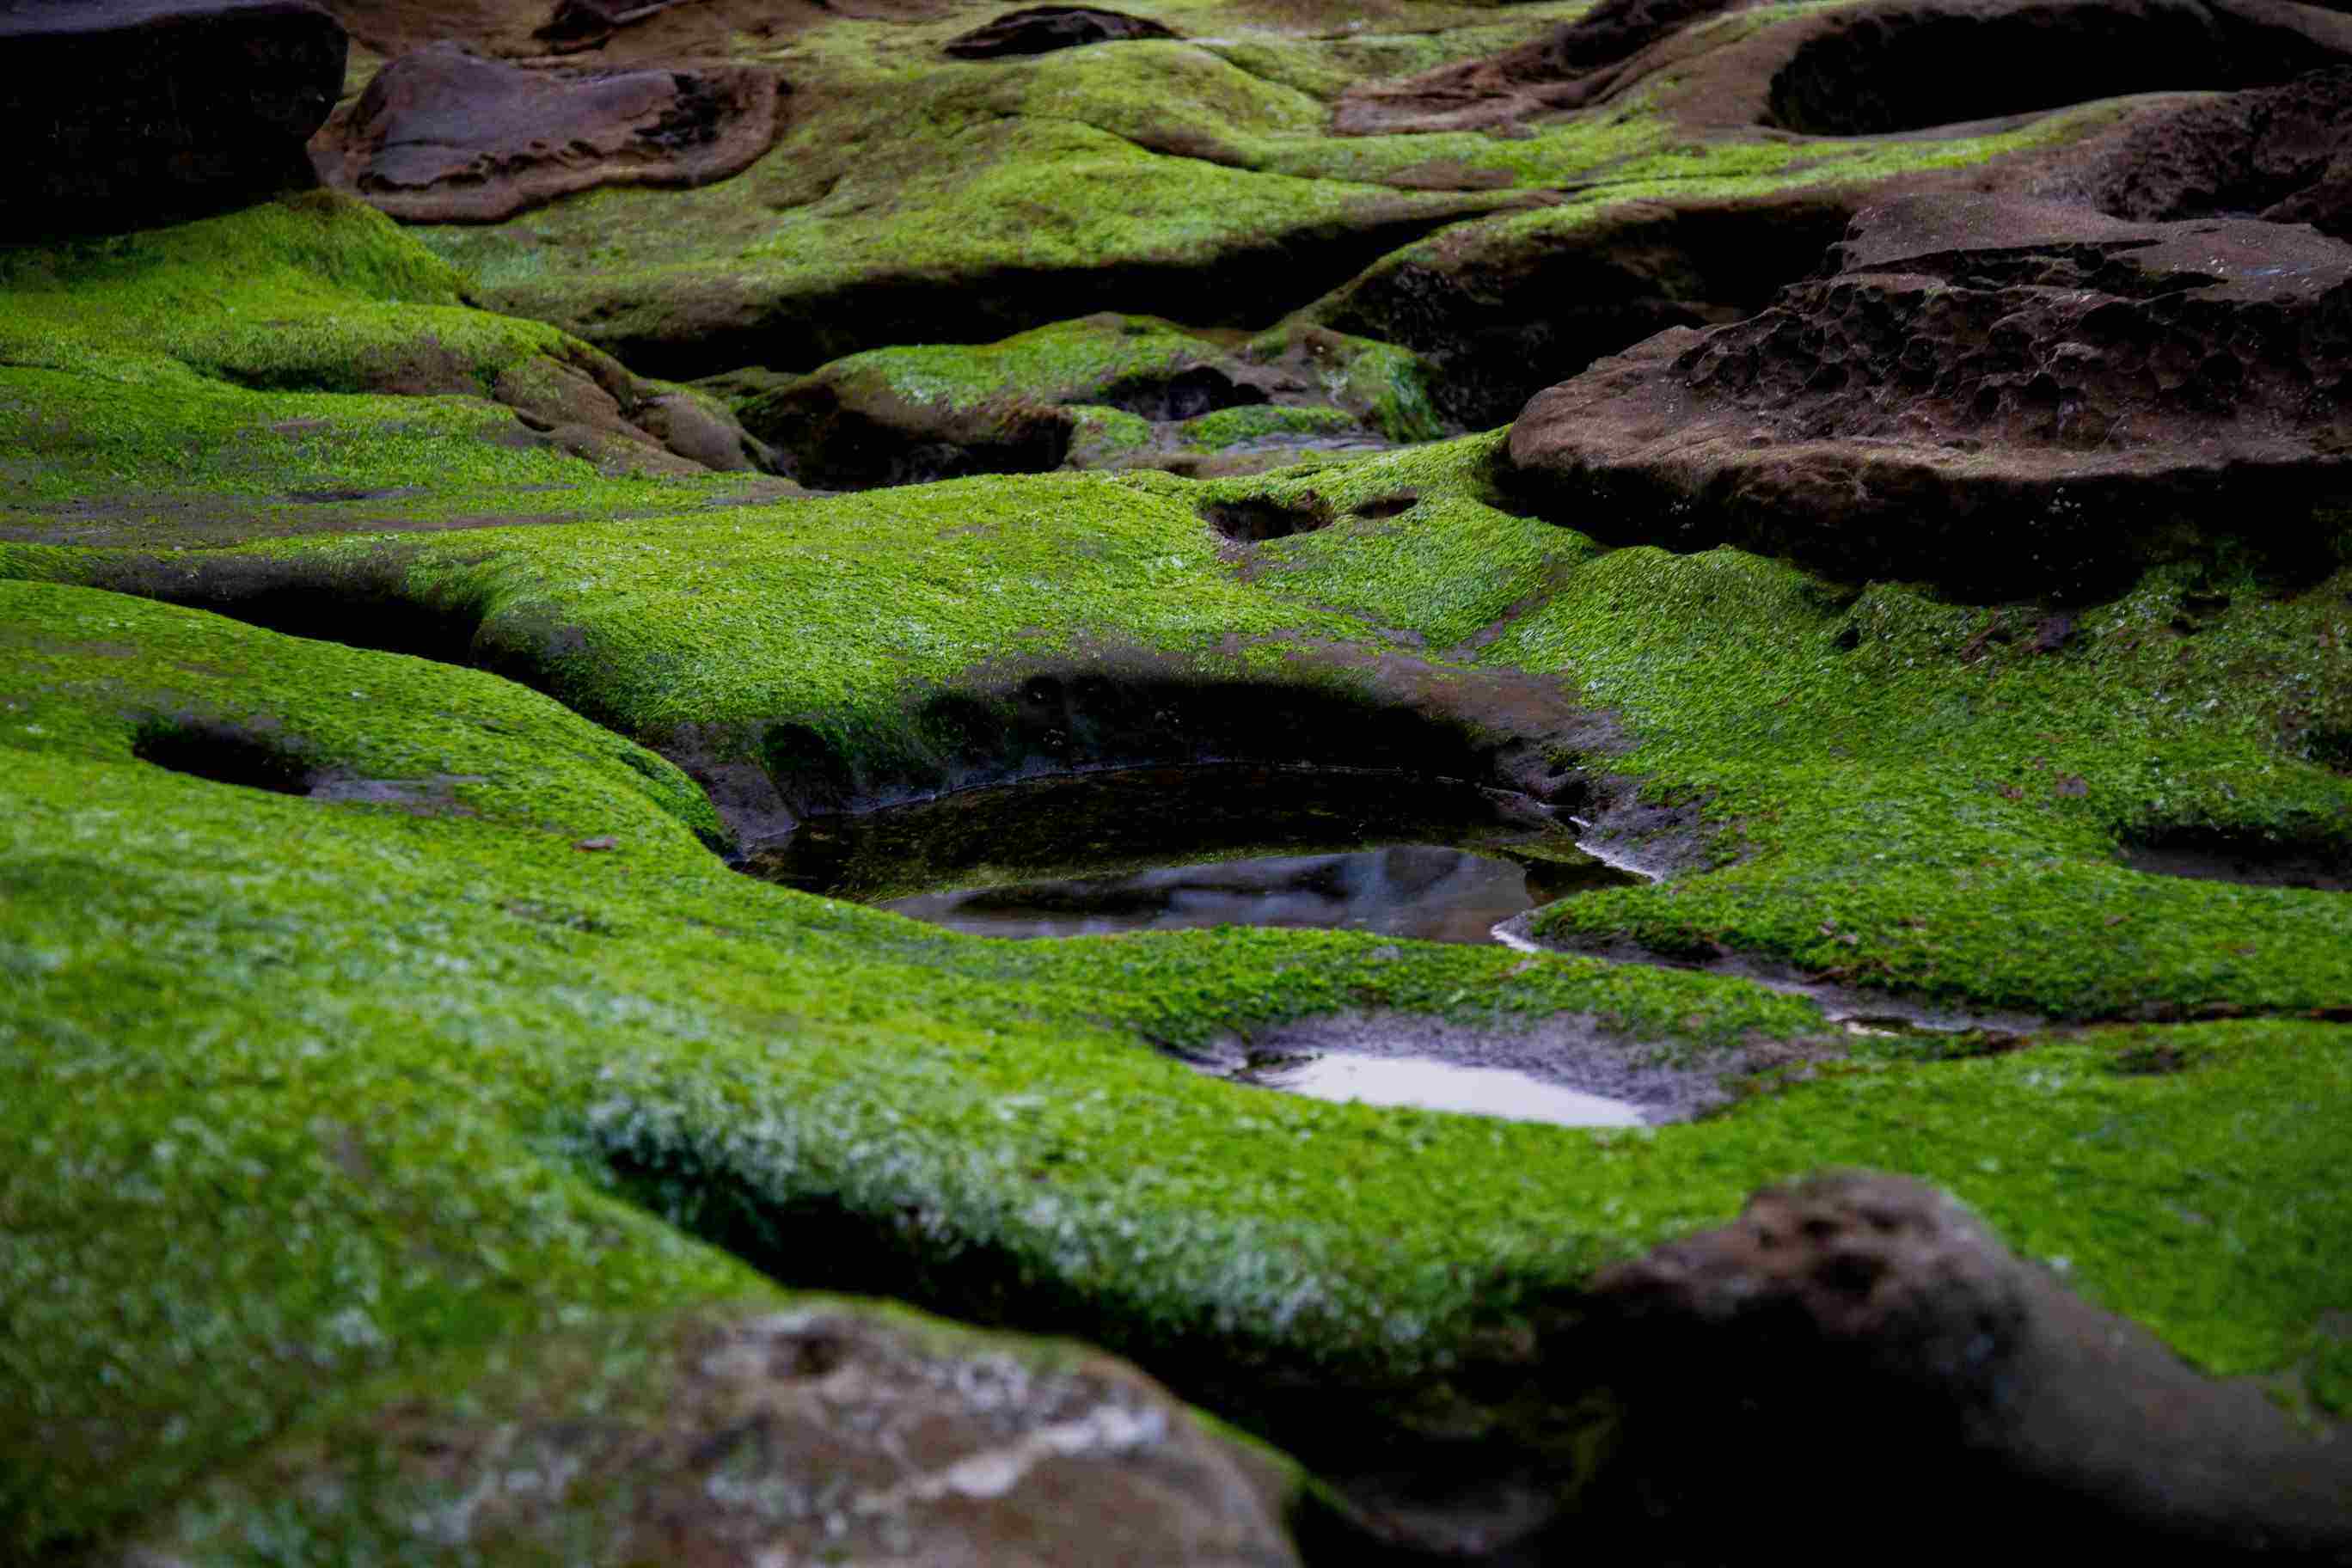 Algae on rocks